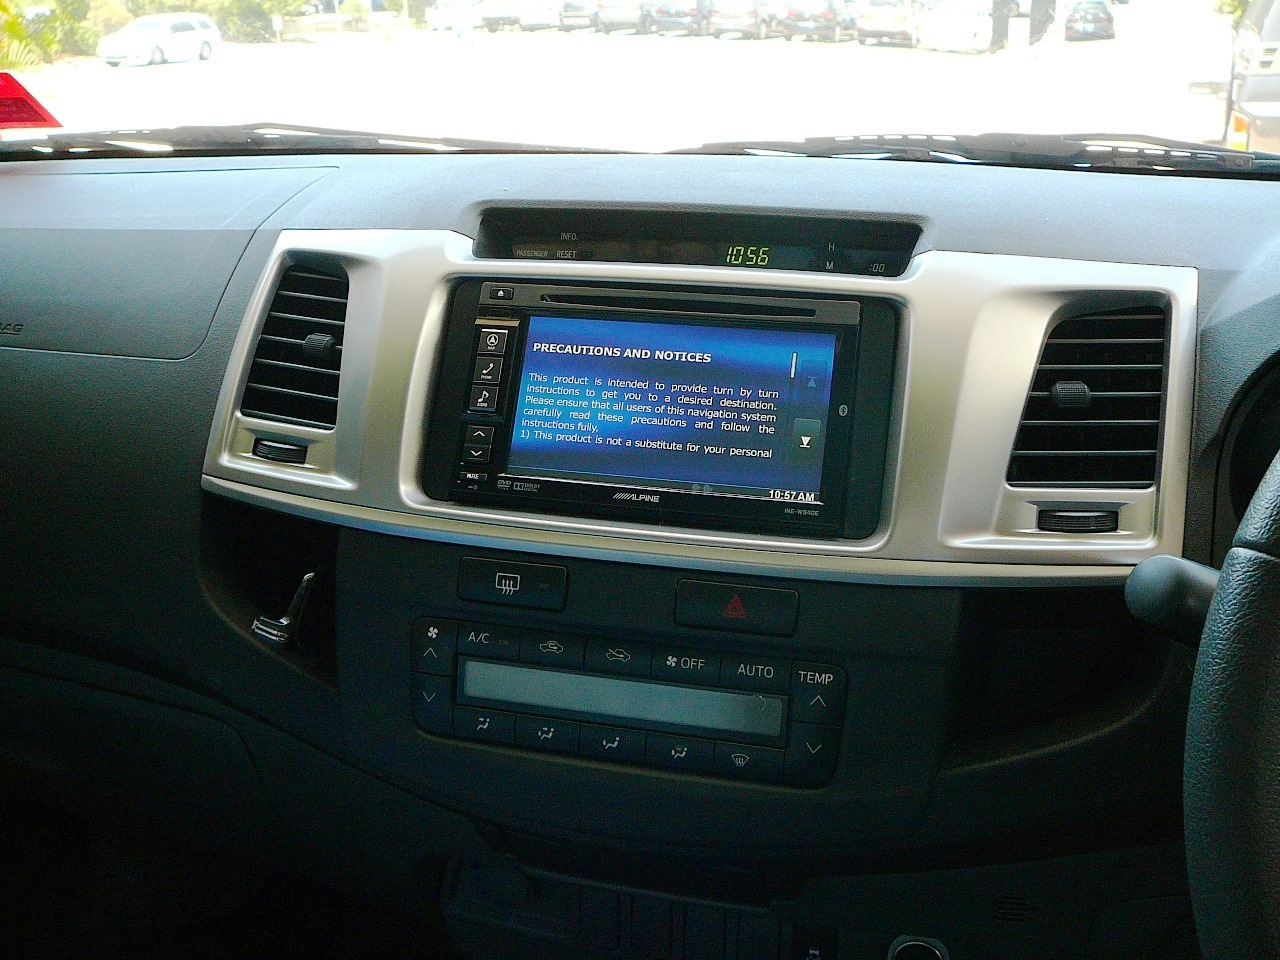 Toyota Hilux 2013, Alpine INE-W940 GPS Navigation